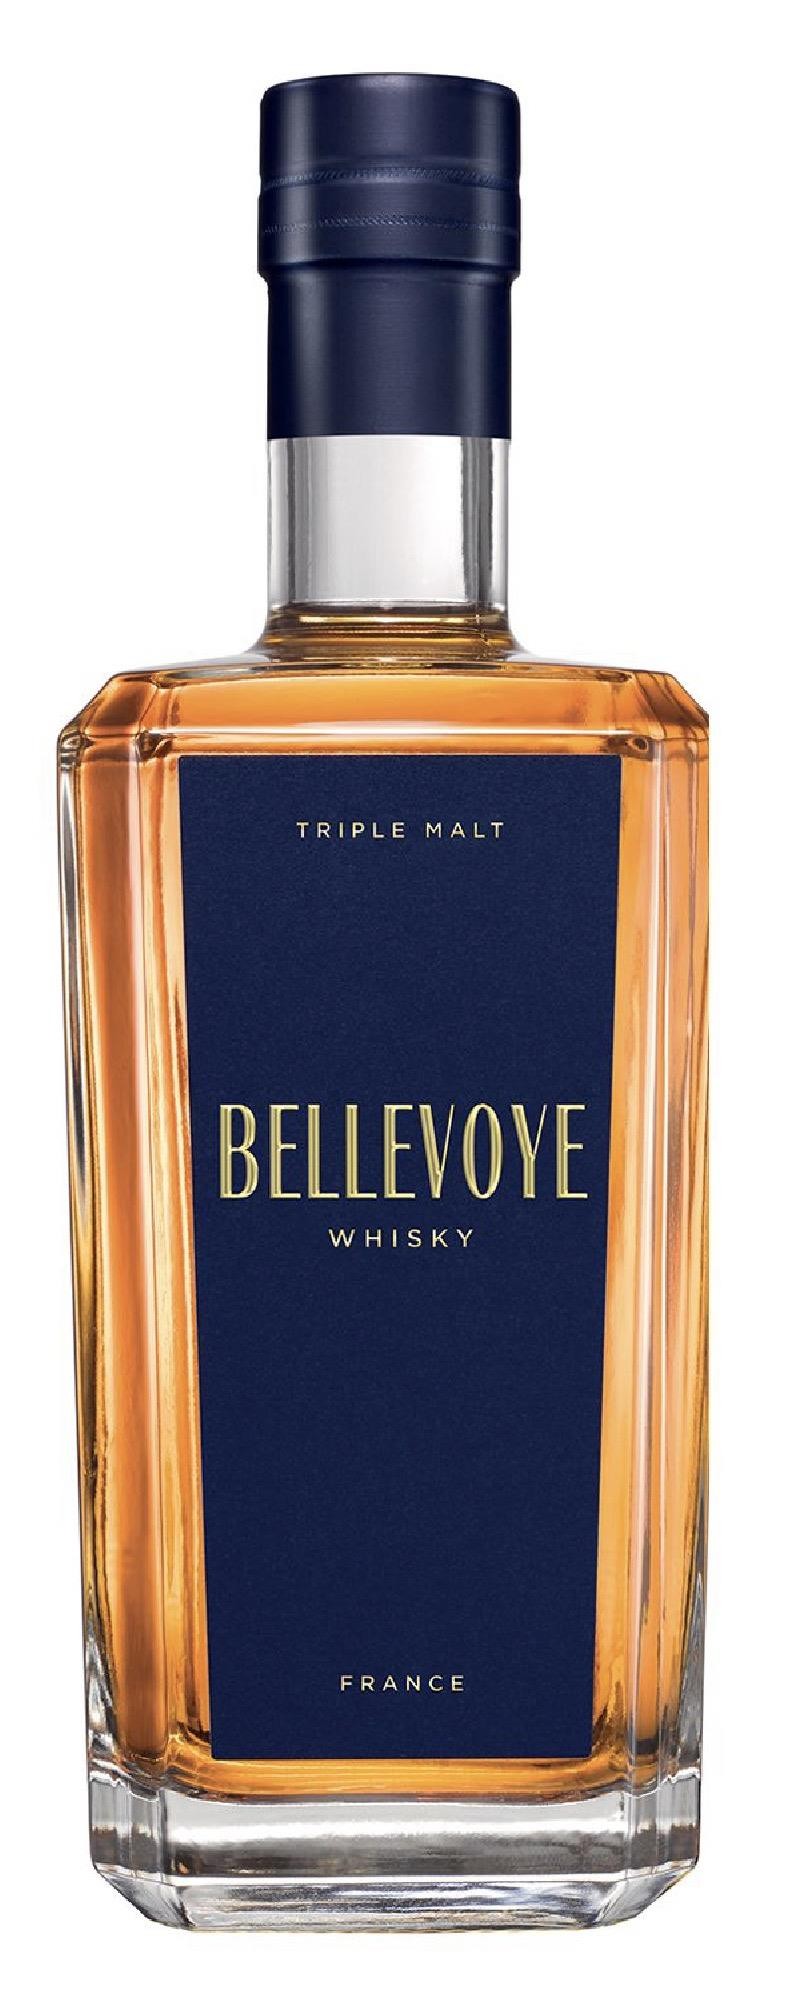 Bellevoye 'Bleu' Triple Malt Whisky, France